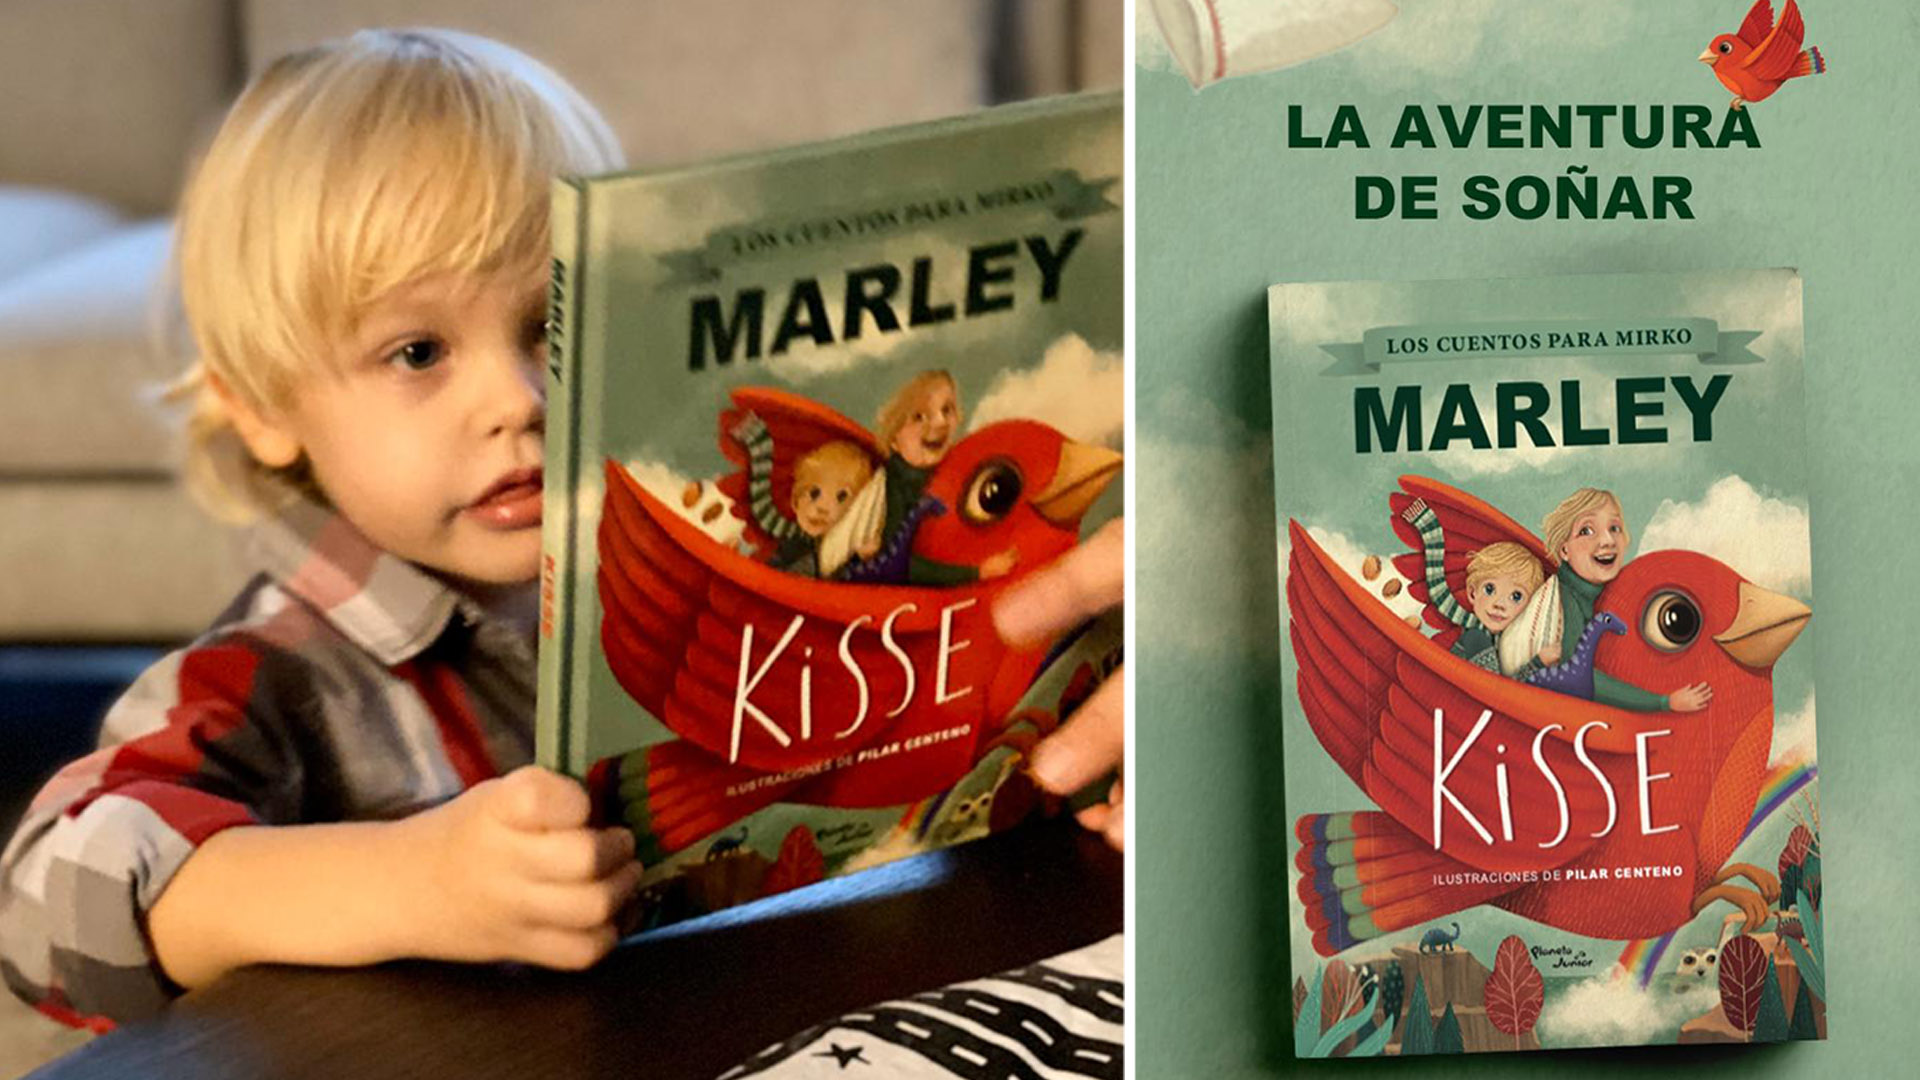 Mirko lee "Kisse", el libro de su papá. En alemán, kisse es almohada. Y así se llamaba precisamente la almohada que de niño Marley llevaba a todos lados. "Sentía que me transportaba a mundos mágicos", cuenta el flamante escritor